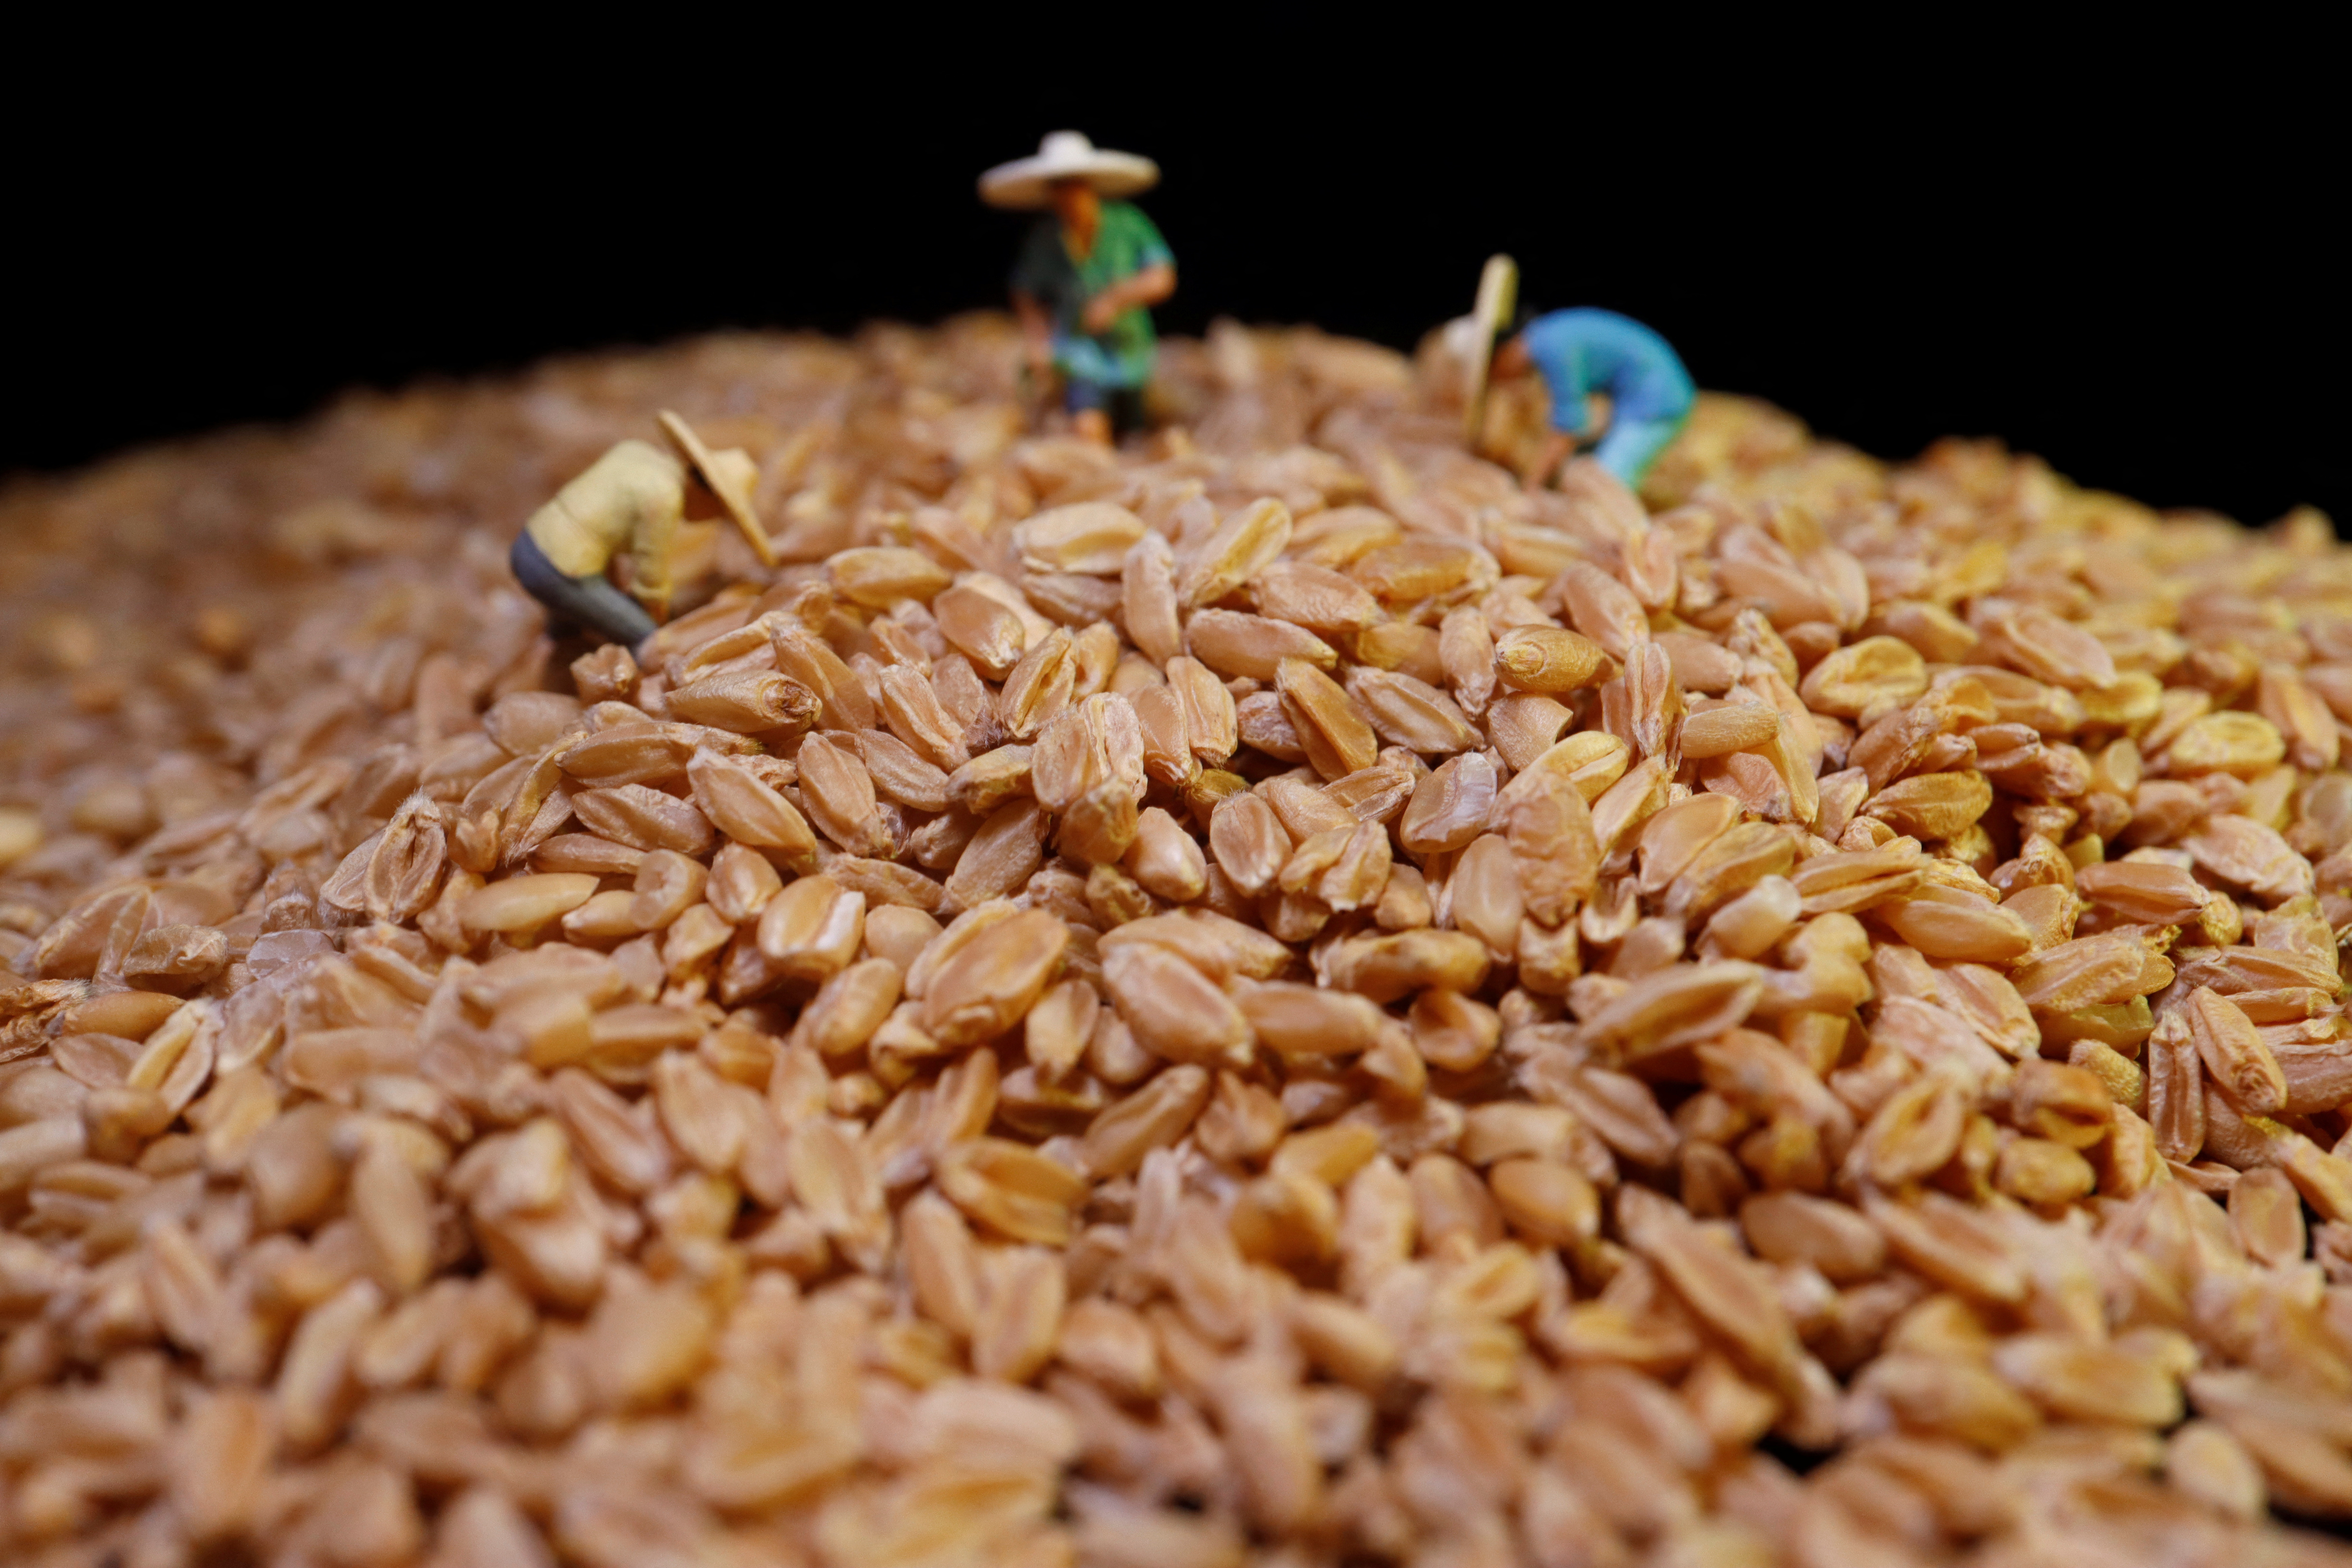 Imagen ilustrativa de granos de trigo.